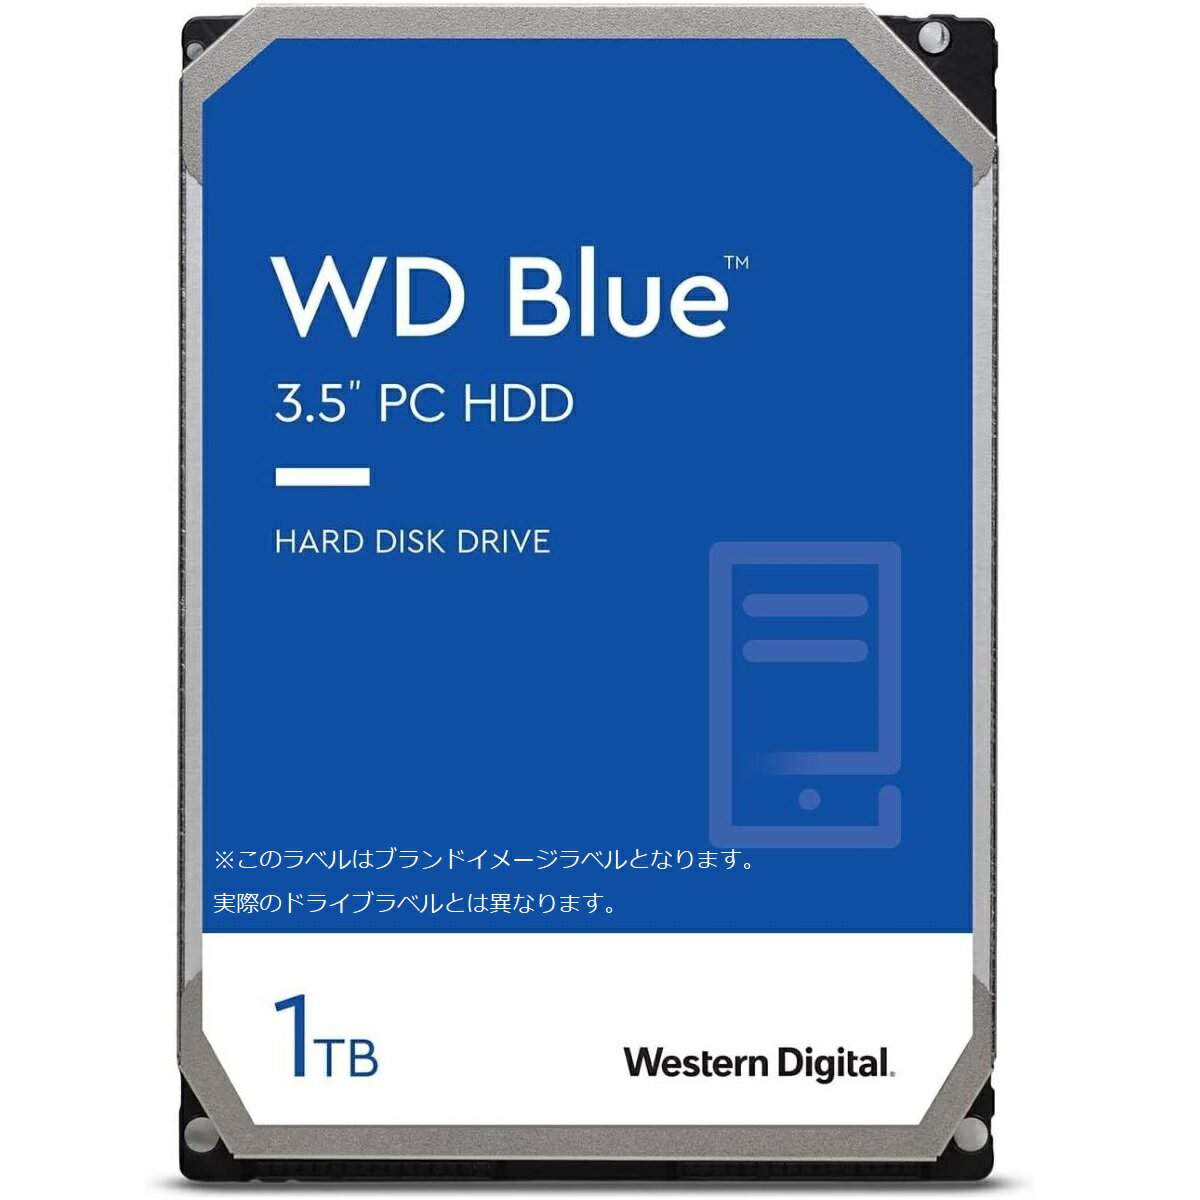 【国内正規流通品】Western Digital ウエスタンデジタル WD Blue 内蔵 HDD ハードディスク 1TB CMR 3.5インチ SATA 7200rpm キャッシュ64MB PC メーカー保証2年 WD10EZEX 内蔵hdd パソコン ハードディスクドライブ ec 省電力 PCパーツ